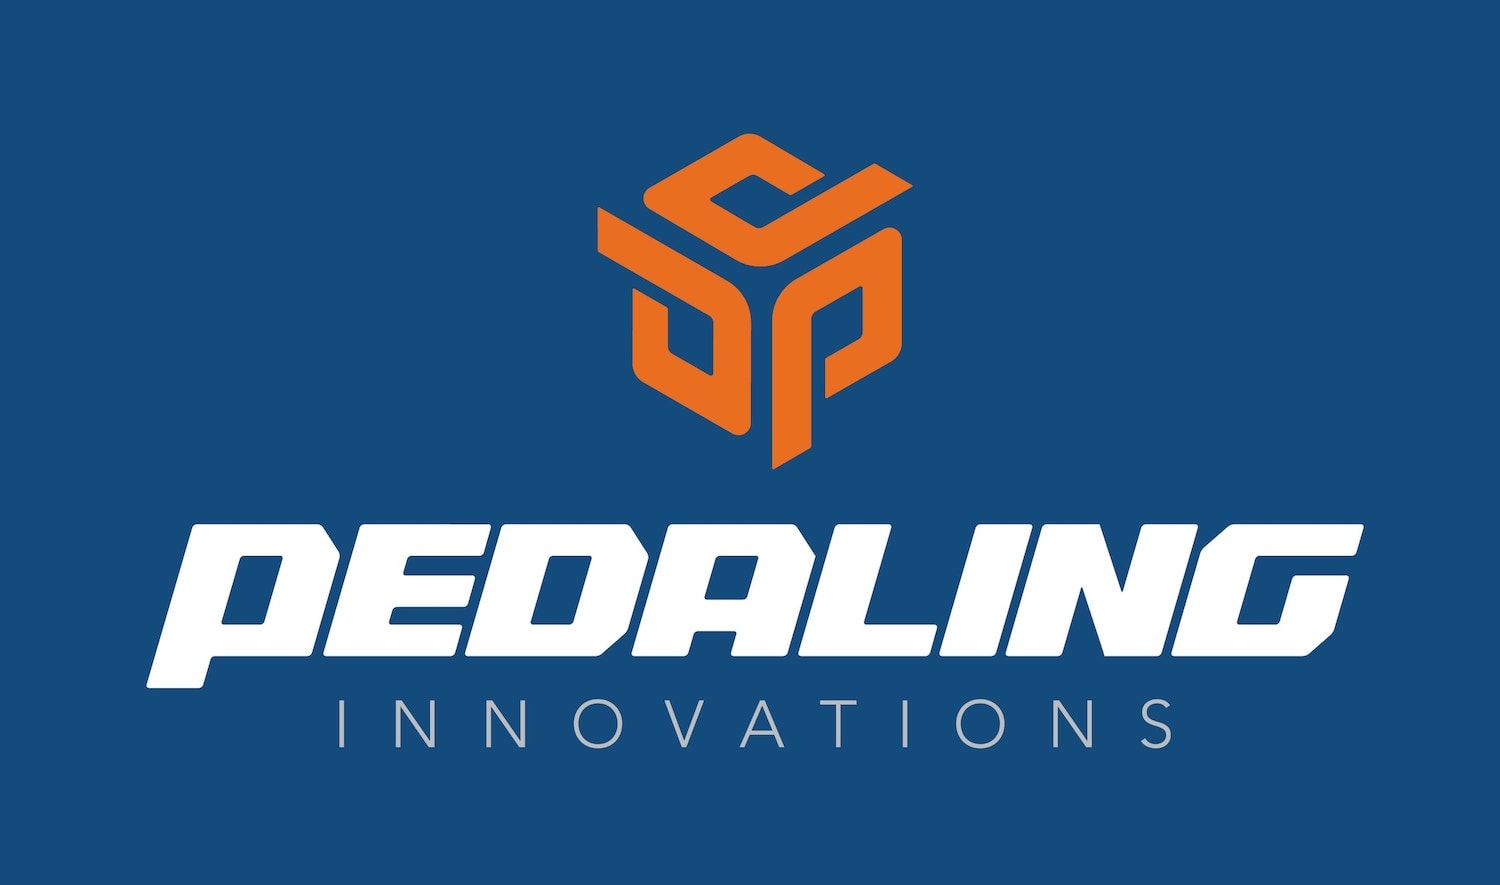 pedaling innovations logo blau